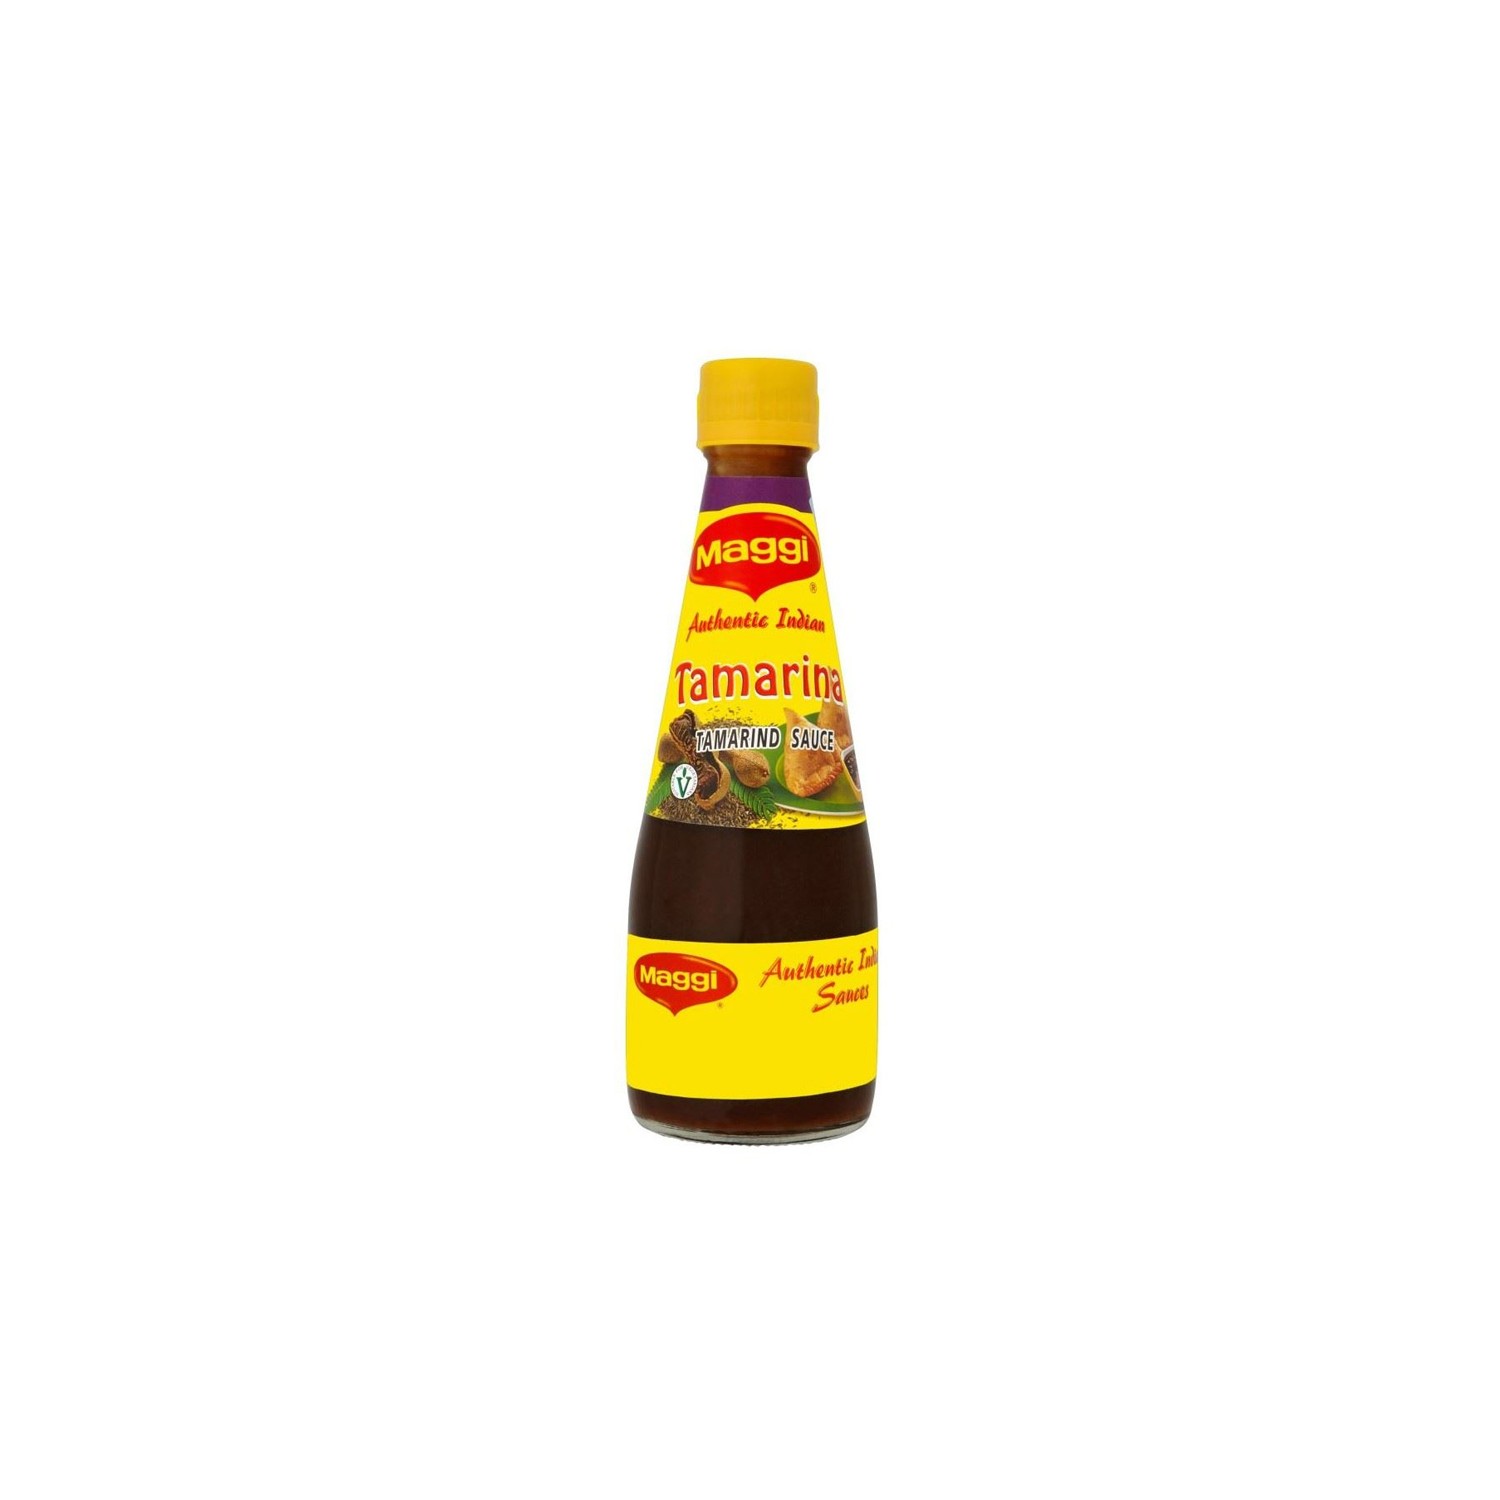 Tamarind sauce - 5000243726960